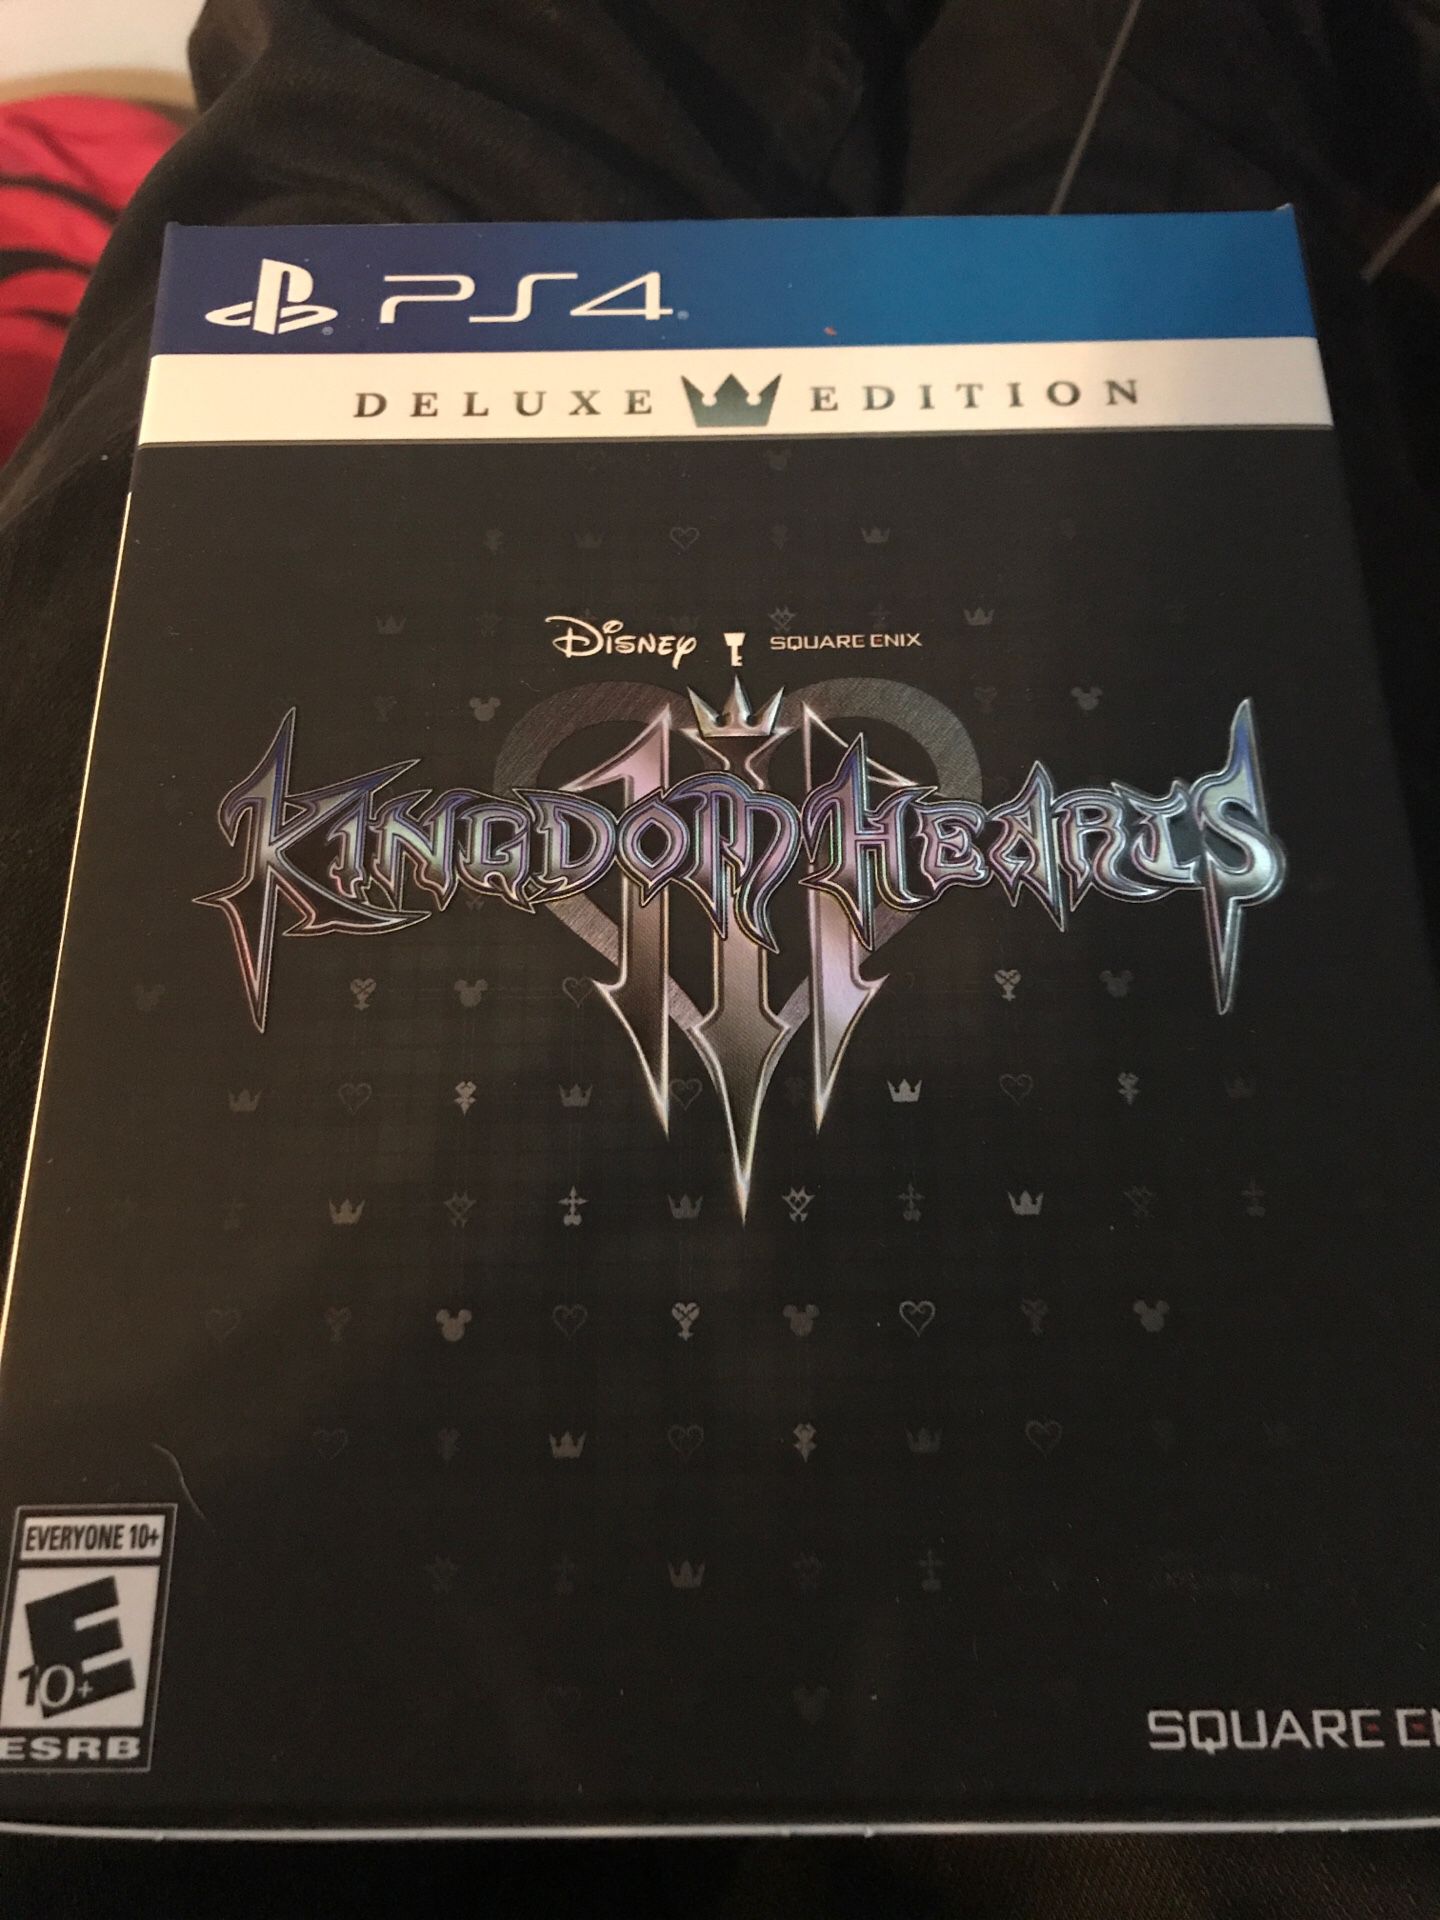 Kingdom Hearts 3 Deluxe Edition boxset